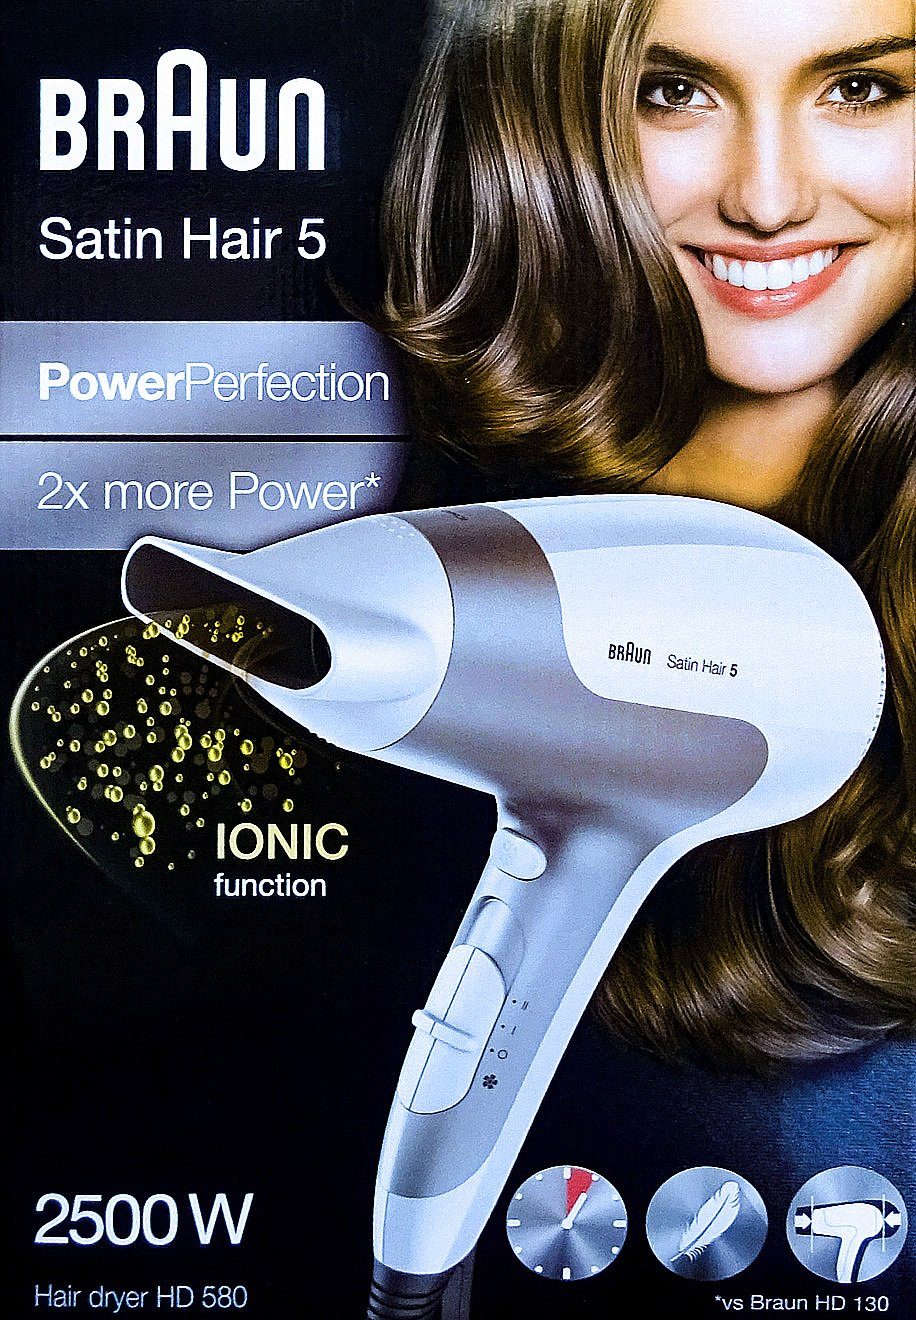 Braun Ionic-Haartrockner Braun Satin Hair 5 Power Perfection, 2500 W, Leistungsstarke  2500W, Haartrockner hat 3 Heizstufen & 2 Gebläsestufen